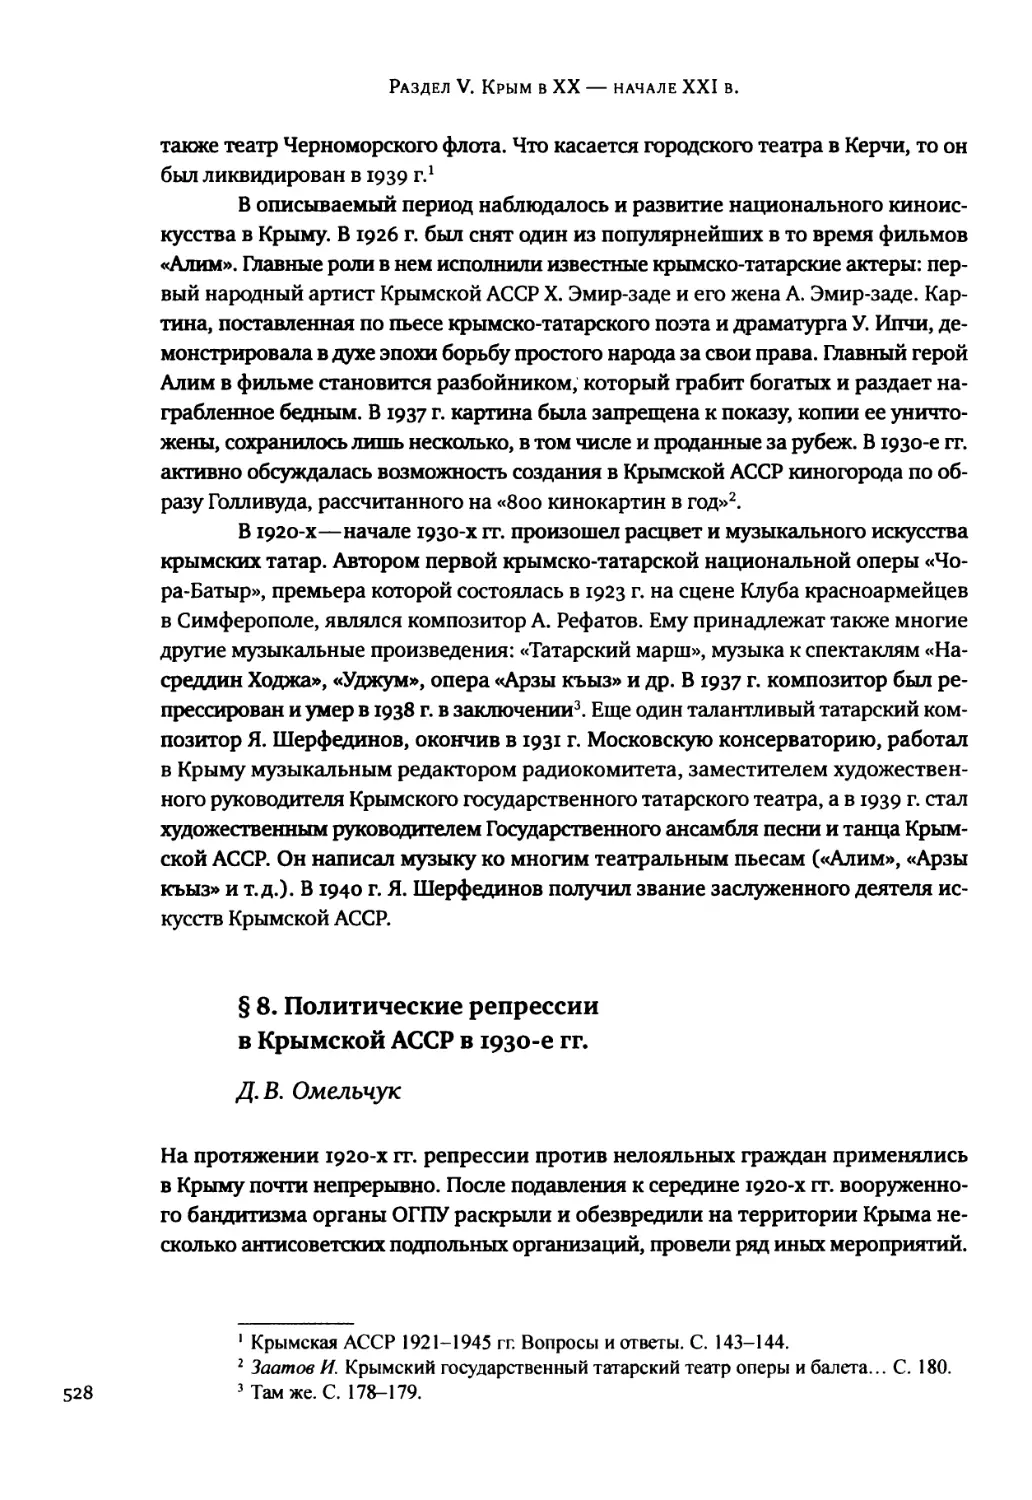 § 8. Политические репрессии в Крымской АССР в 1930-е гг